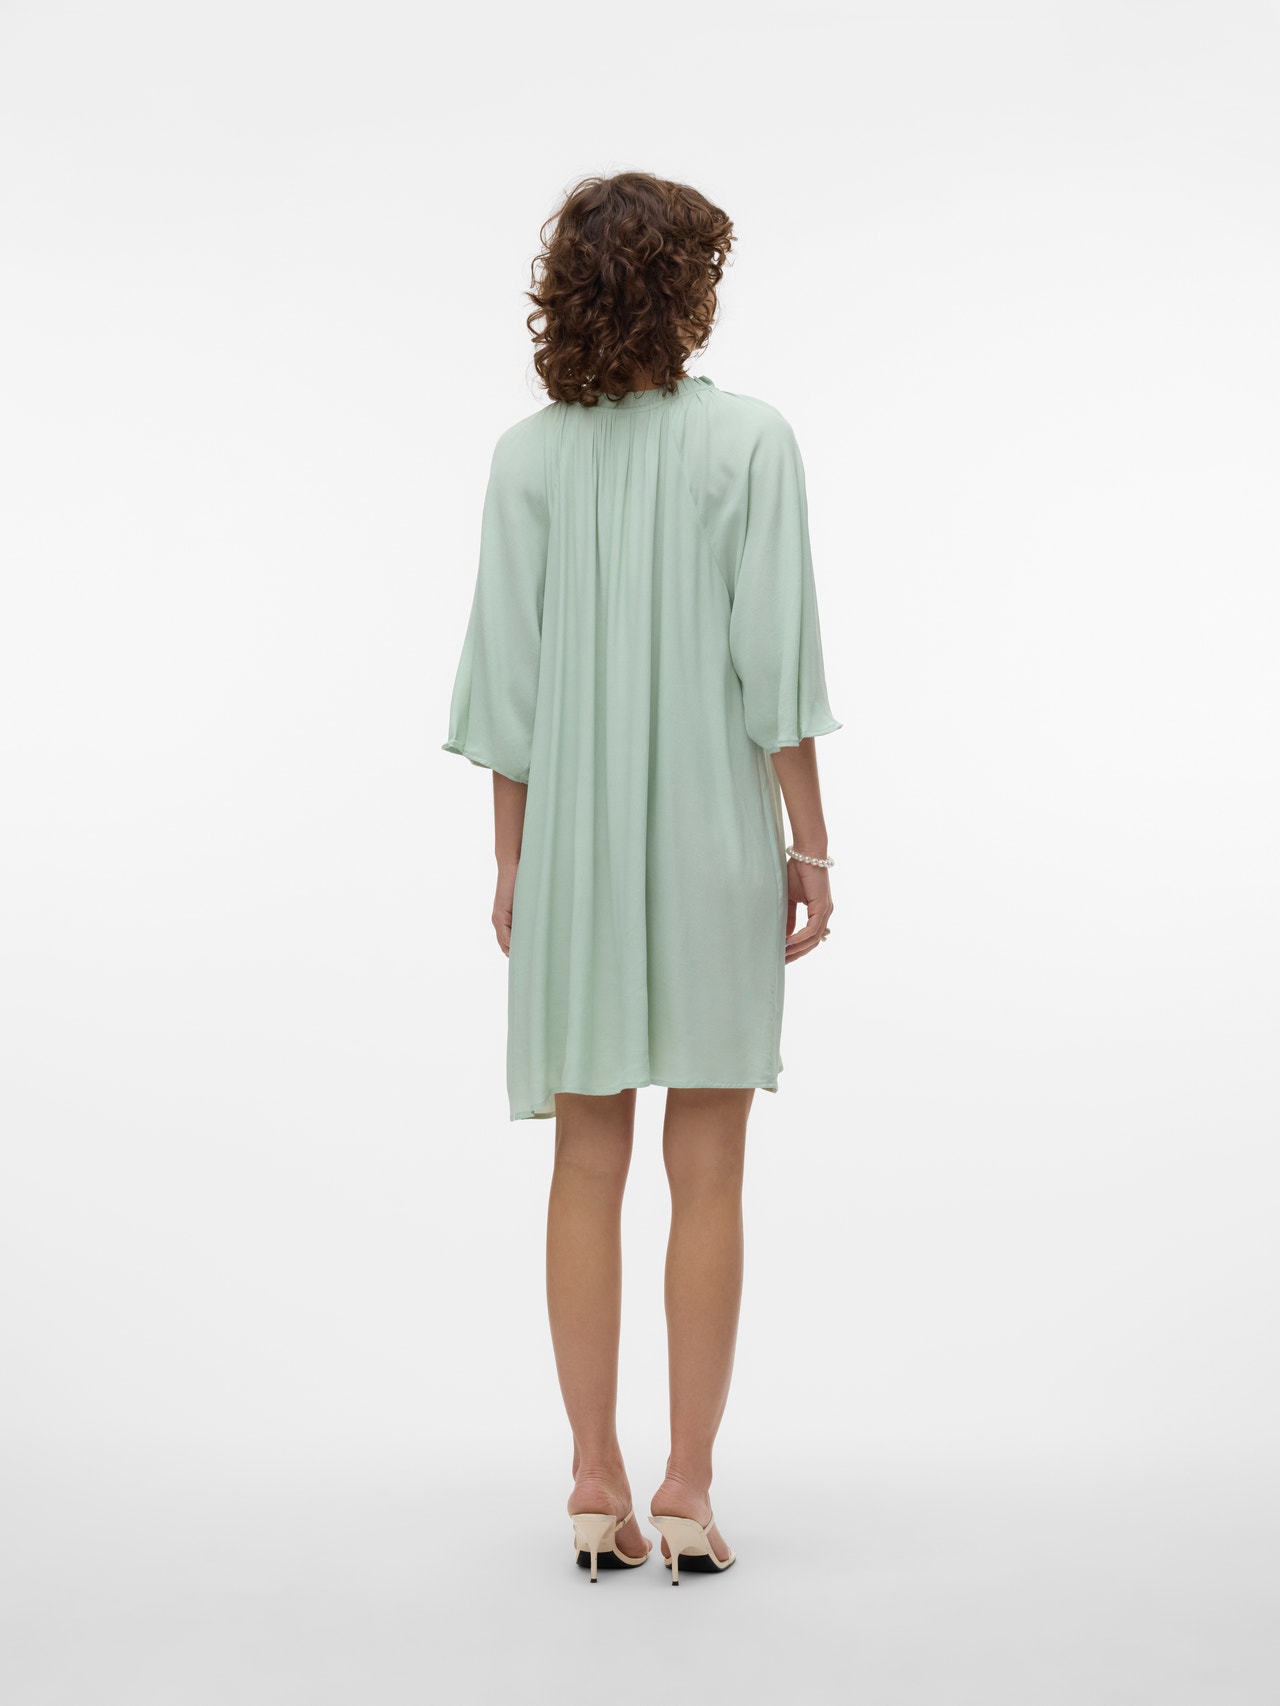 Vero Moda VMJANNI Kort klänning -Celadon - 10305317